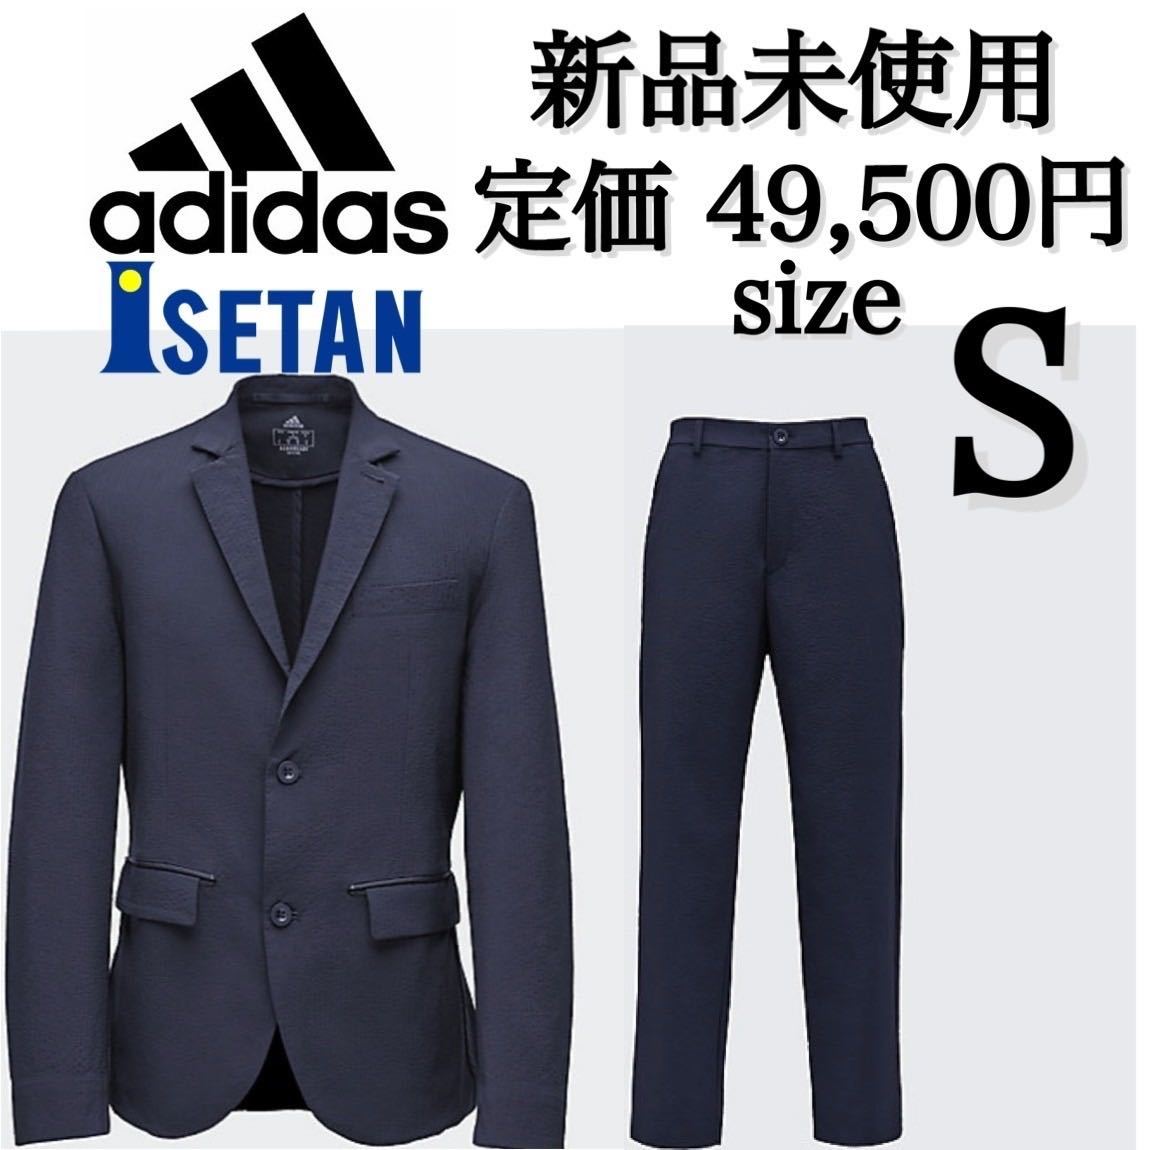 非常に高い品質 adidas × ISETAN アディダス 伊勢丹 スーツ ジャケット